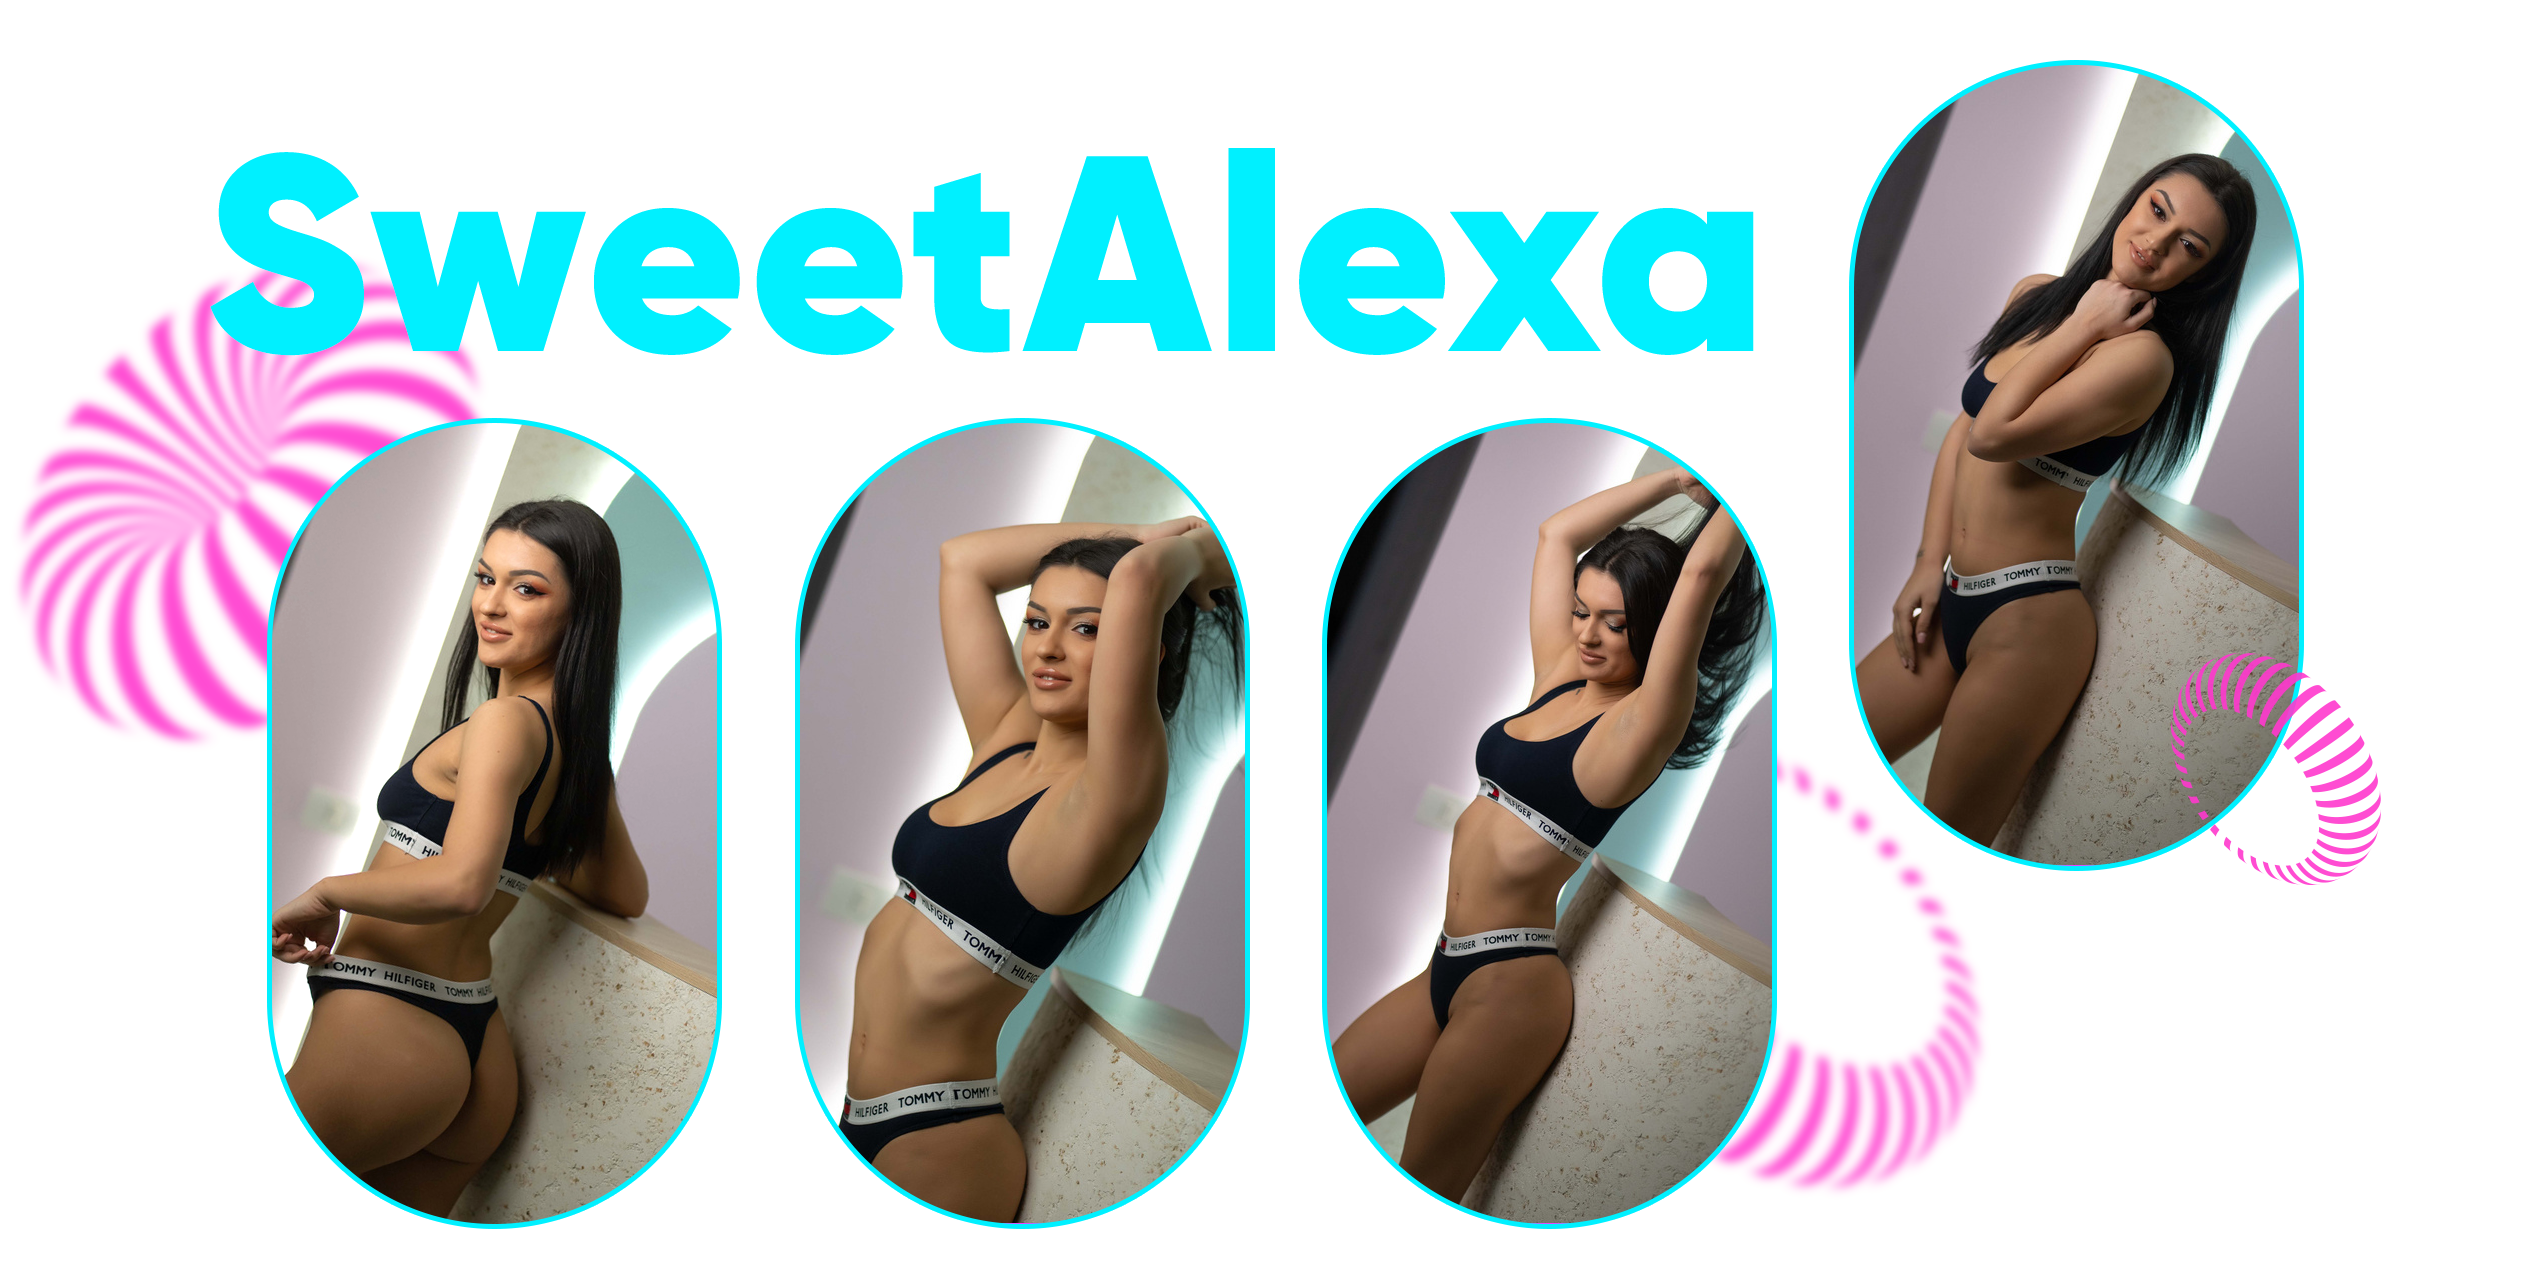 SweetAlexa HI! image: 1